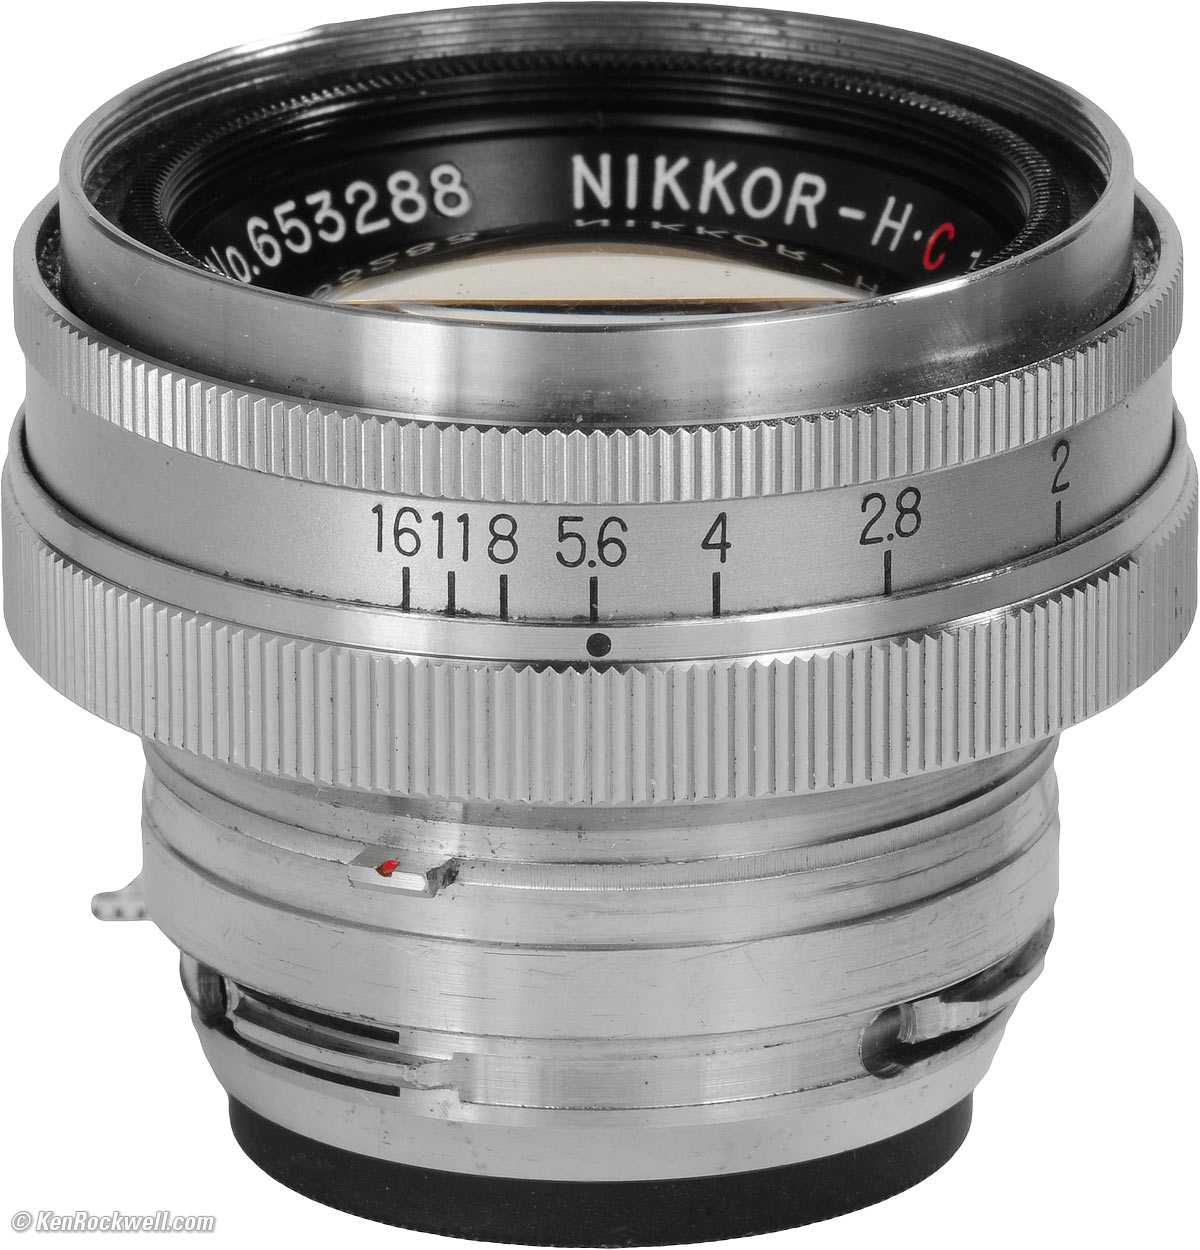 Лучшие объективы nikon в 2021 году: объективы для цифровой зеркальной фотокамеры nikon и системы z